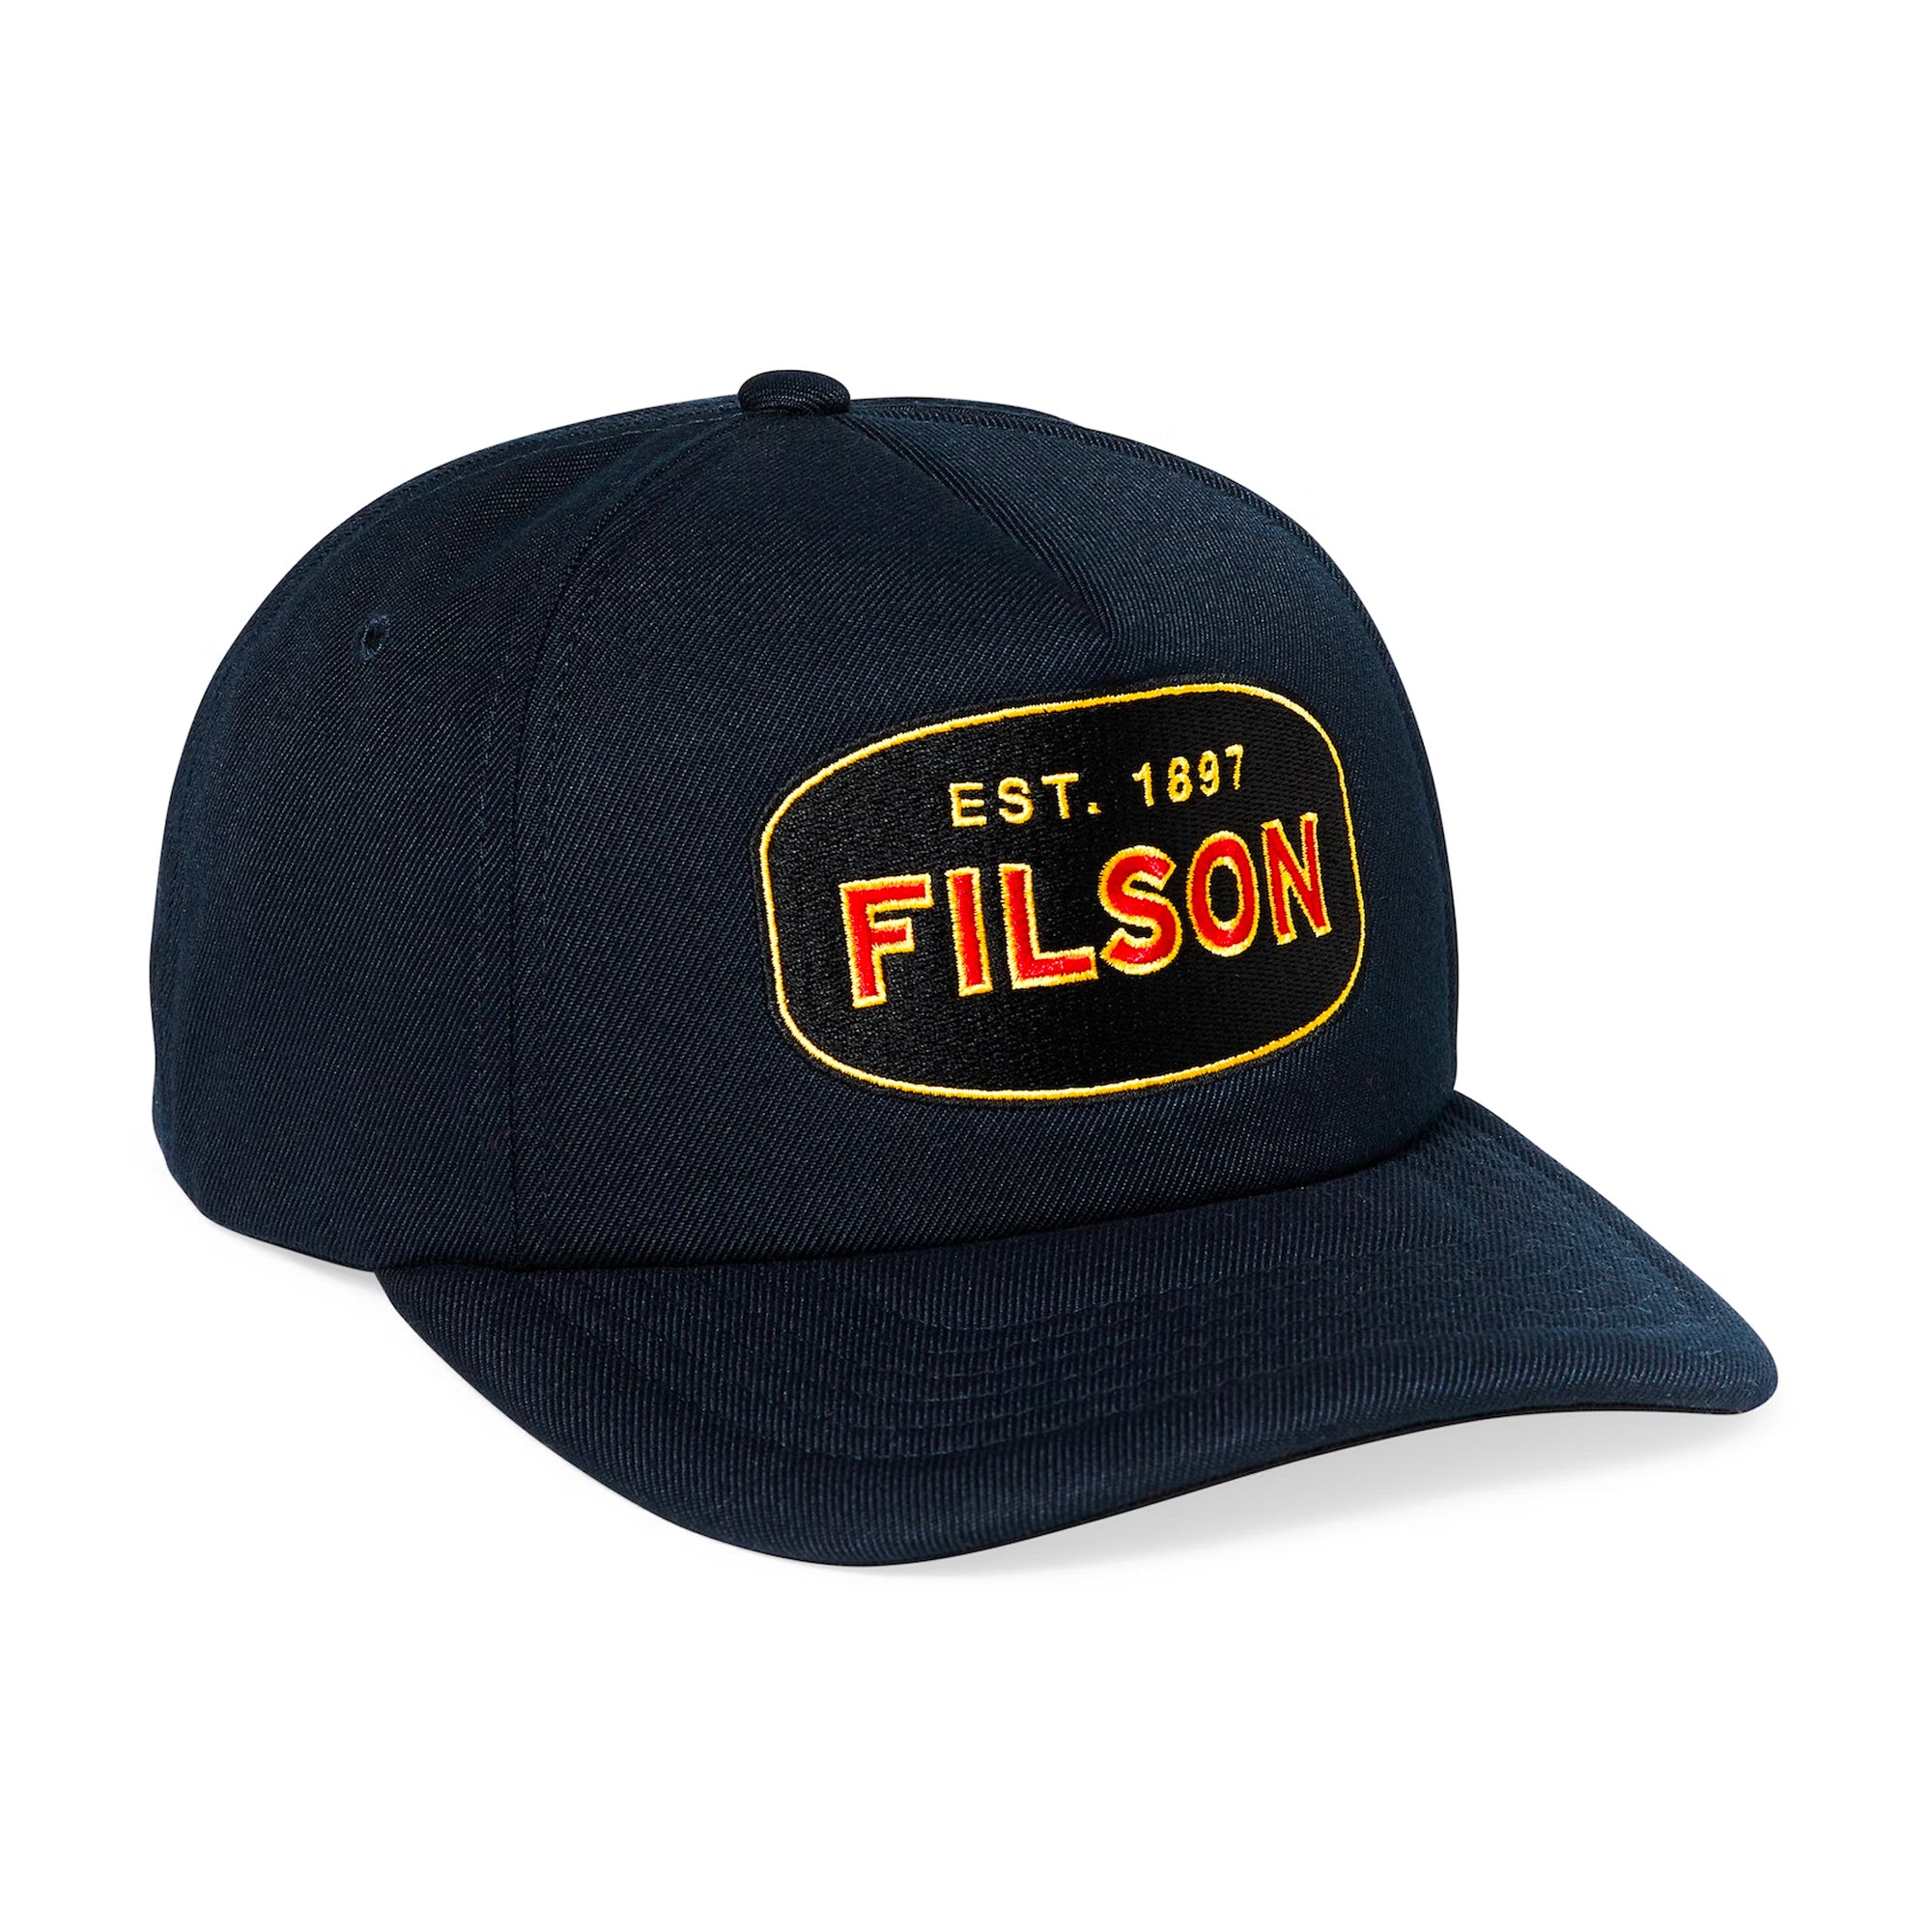 Filson Harvester Cap - Dark Navy / Defender